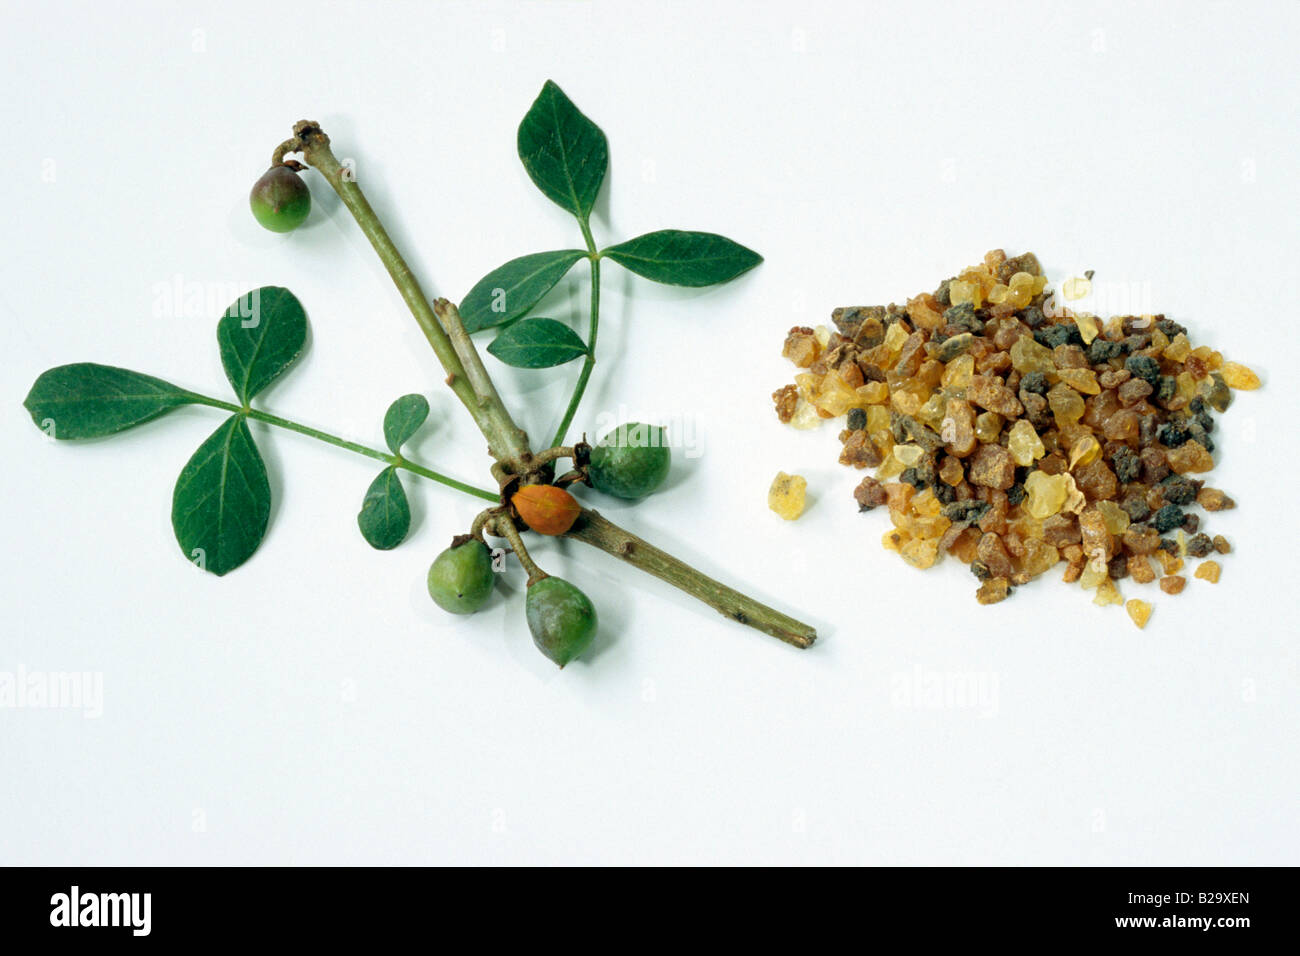 Abisinio Mirra (Commiphora abyssinica), TWIG TWIG con hojas, con hojas y resina, studio picture Foto de stock